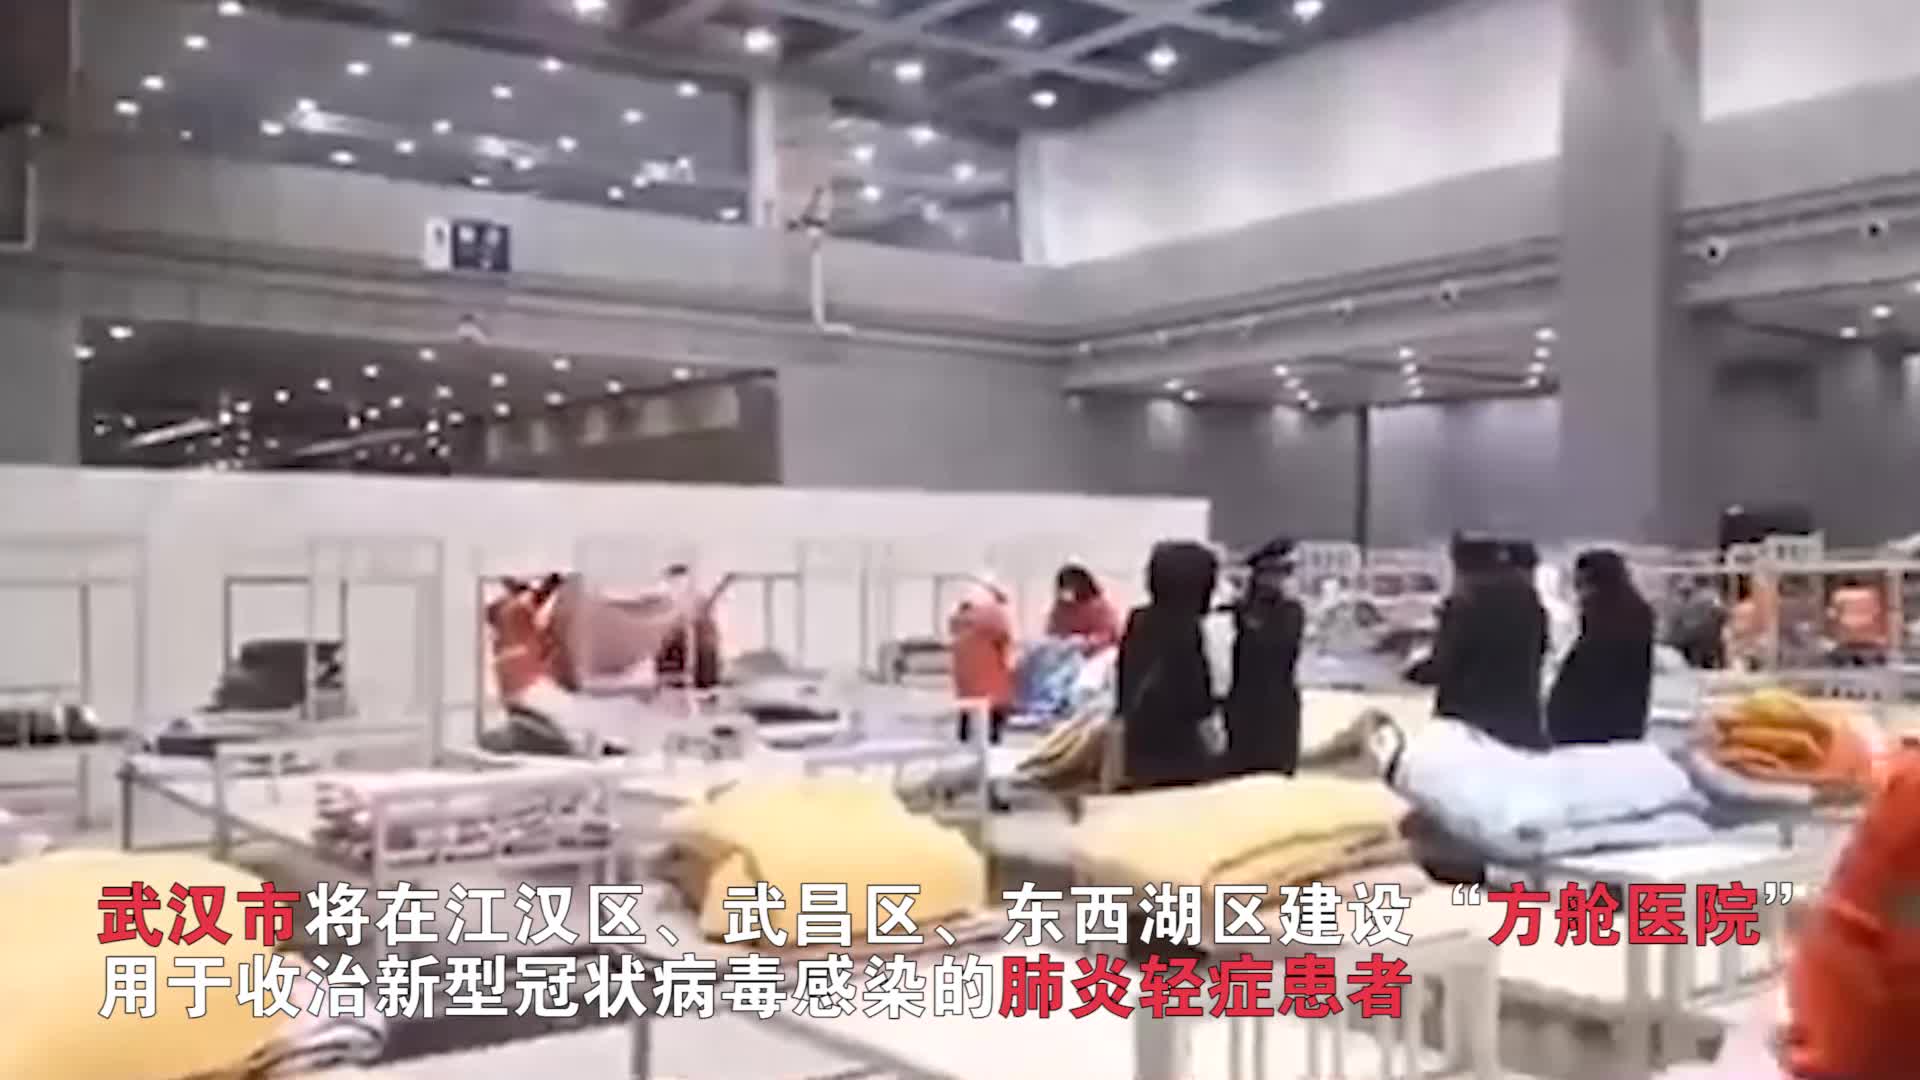 实拍武汉“方舱医院” 3400张床位集中收治轻症患者